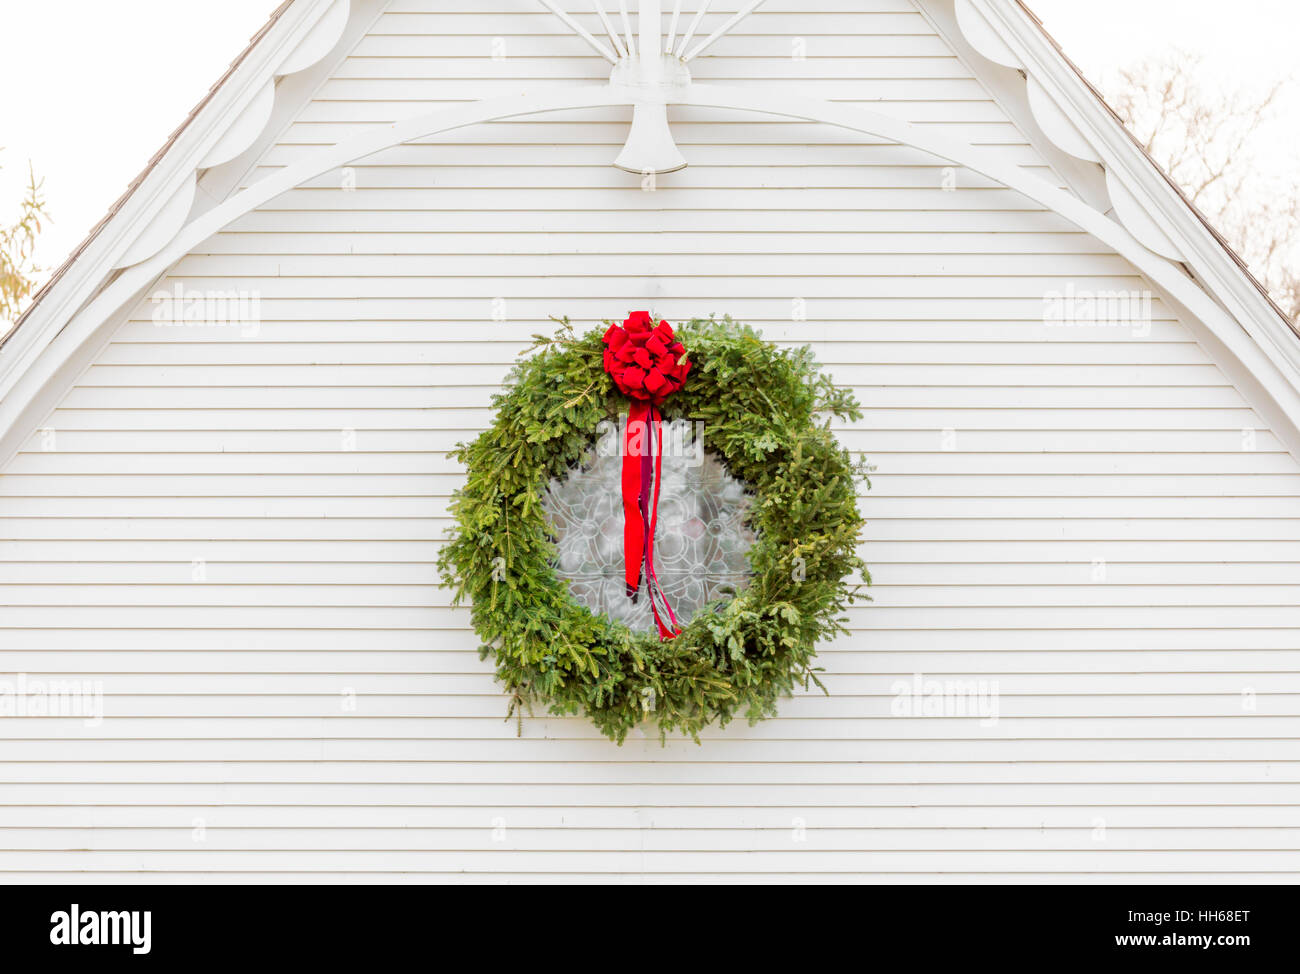 Ghirlanda di Natale appeso all'esterno di un vecchio edificio bianco con interessanti dettagli architettonici Foto Stock